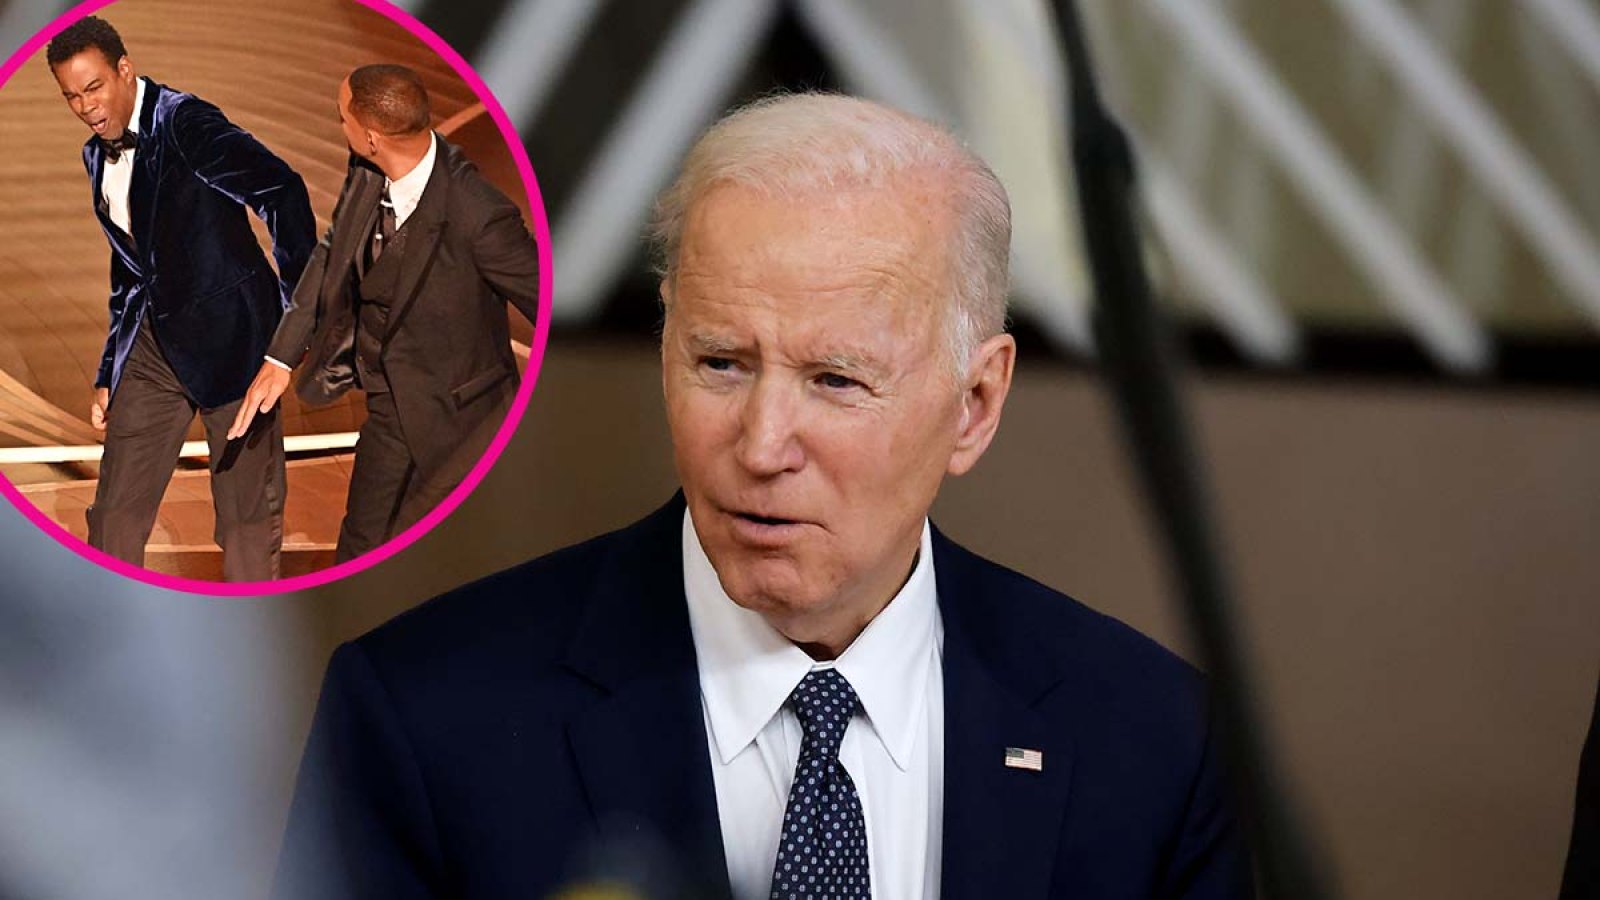 Joe Biden White House Asked About Will Smith Chris Rock Drama